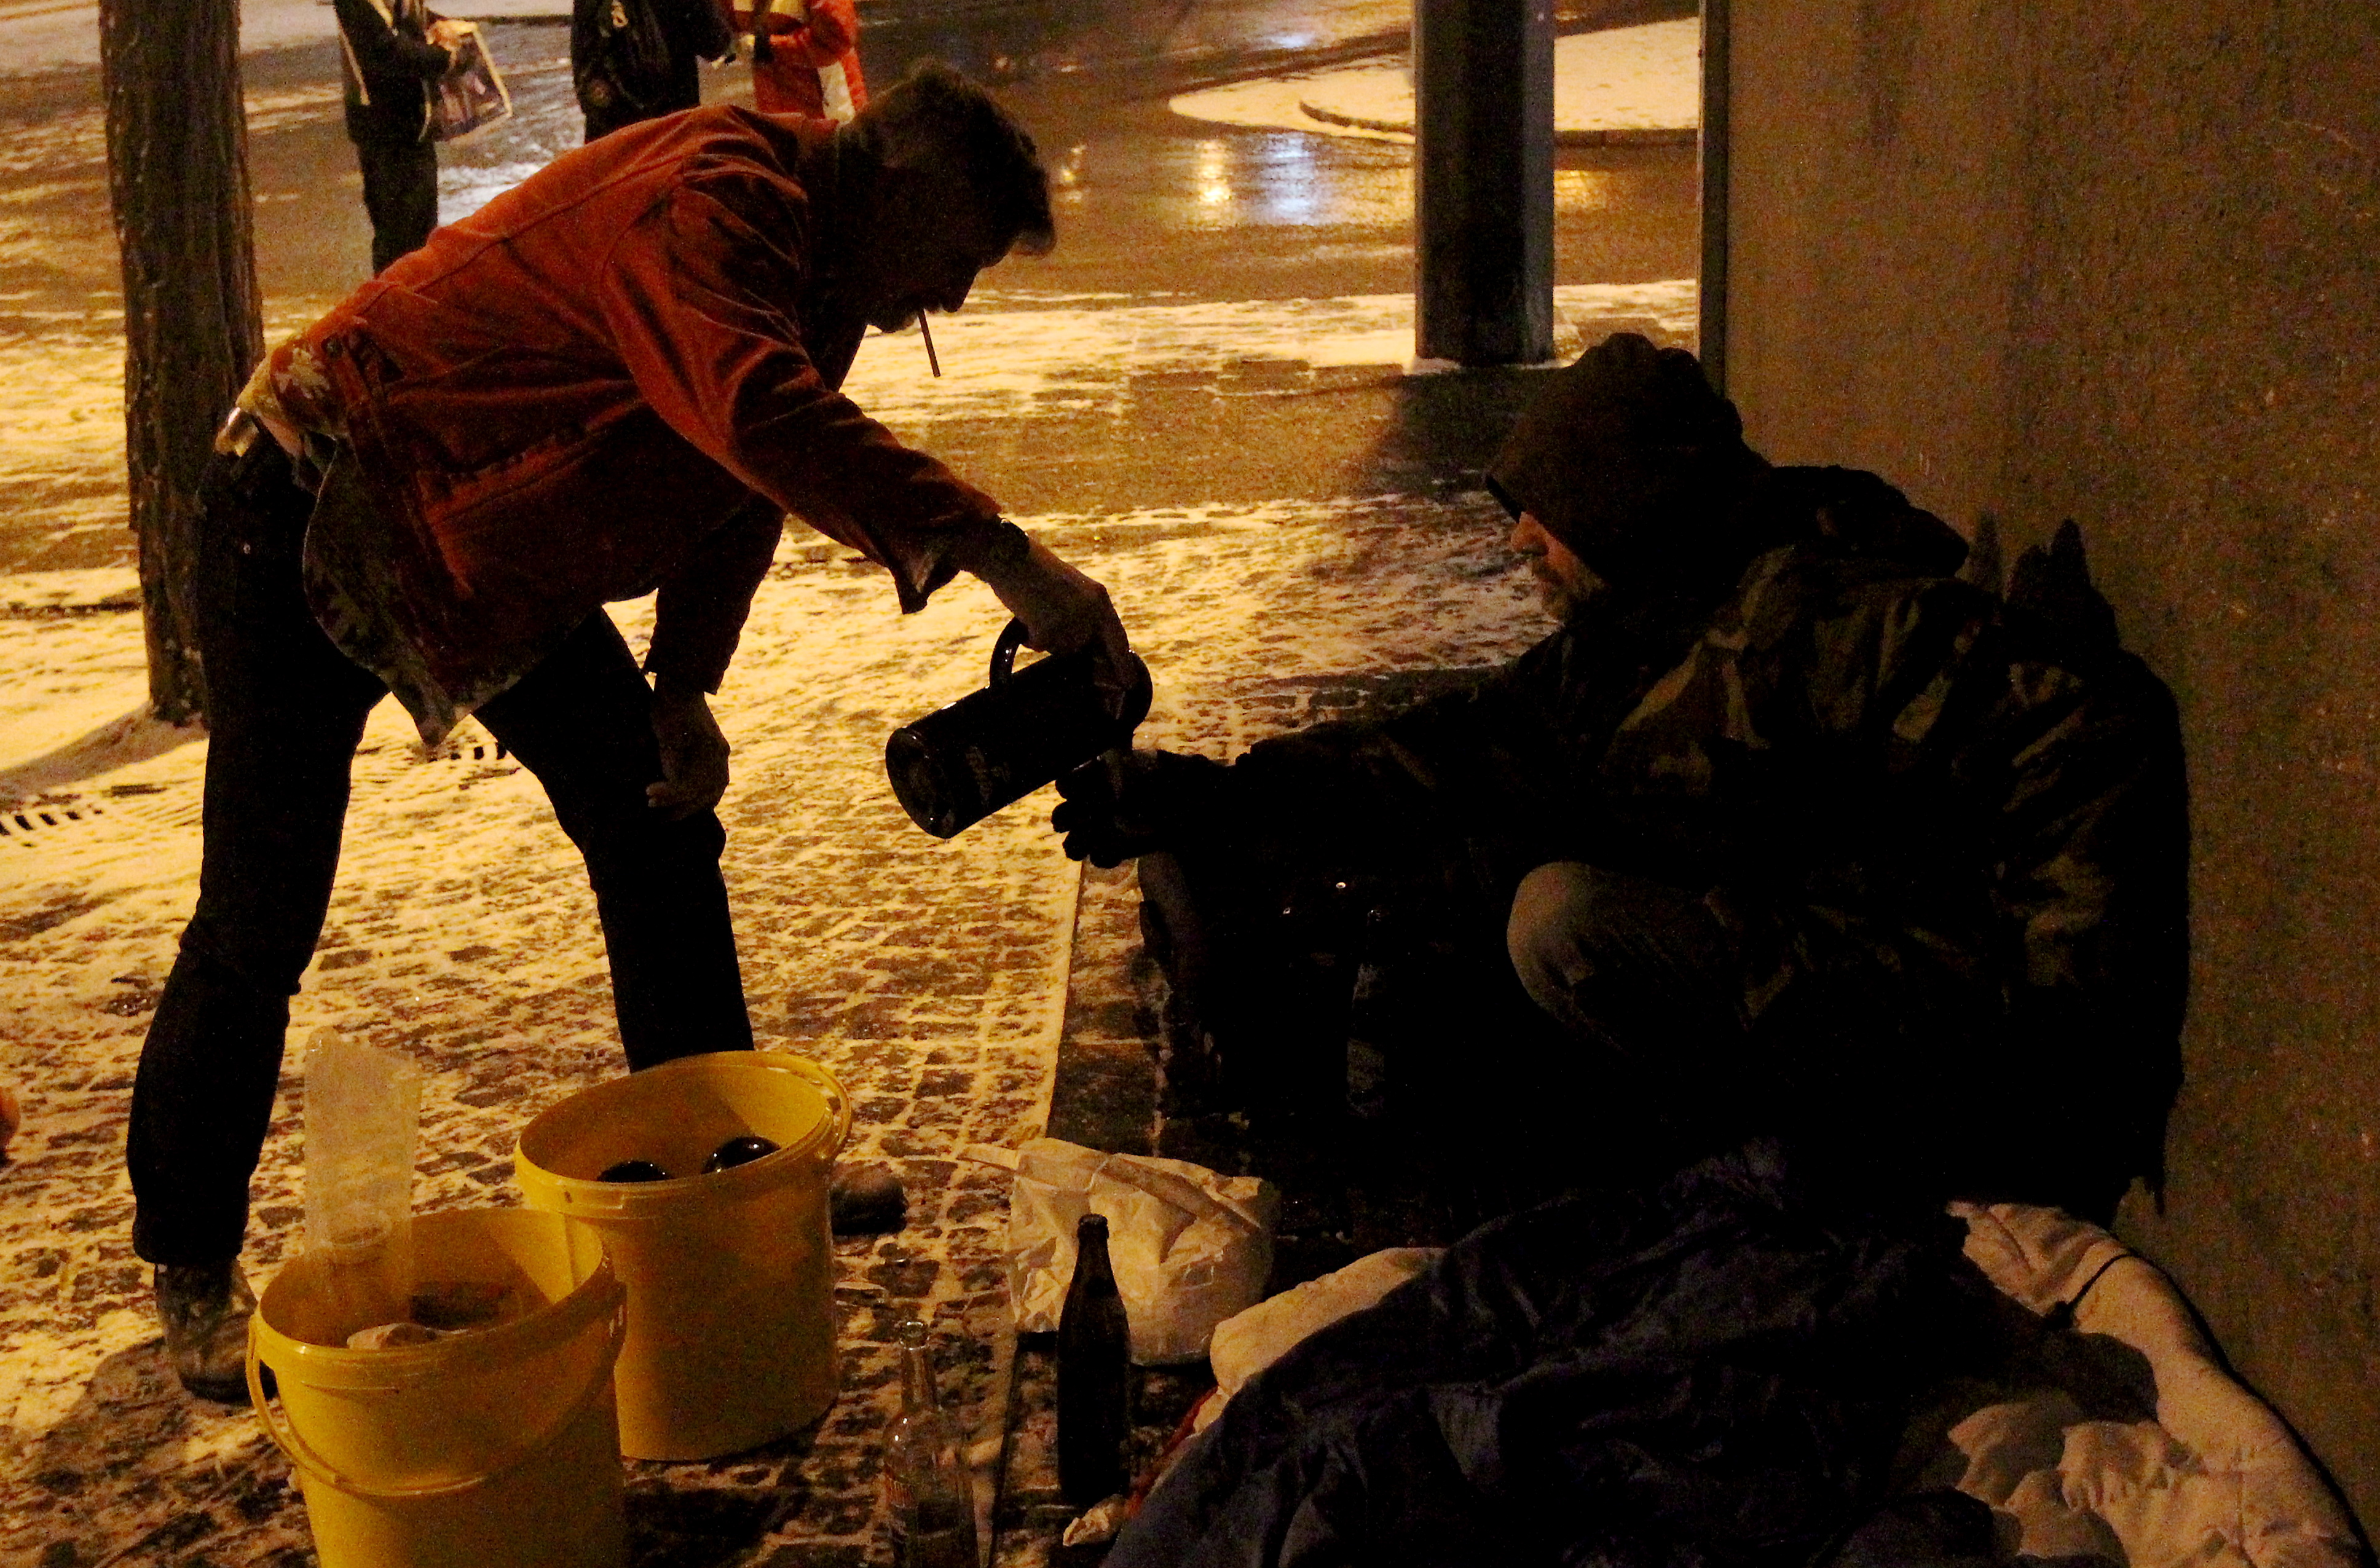 Bei Dunkelheit schenkt ein Mann einem Obdachlosen Tee in einen Becher.